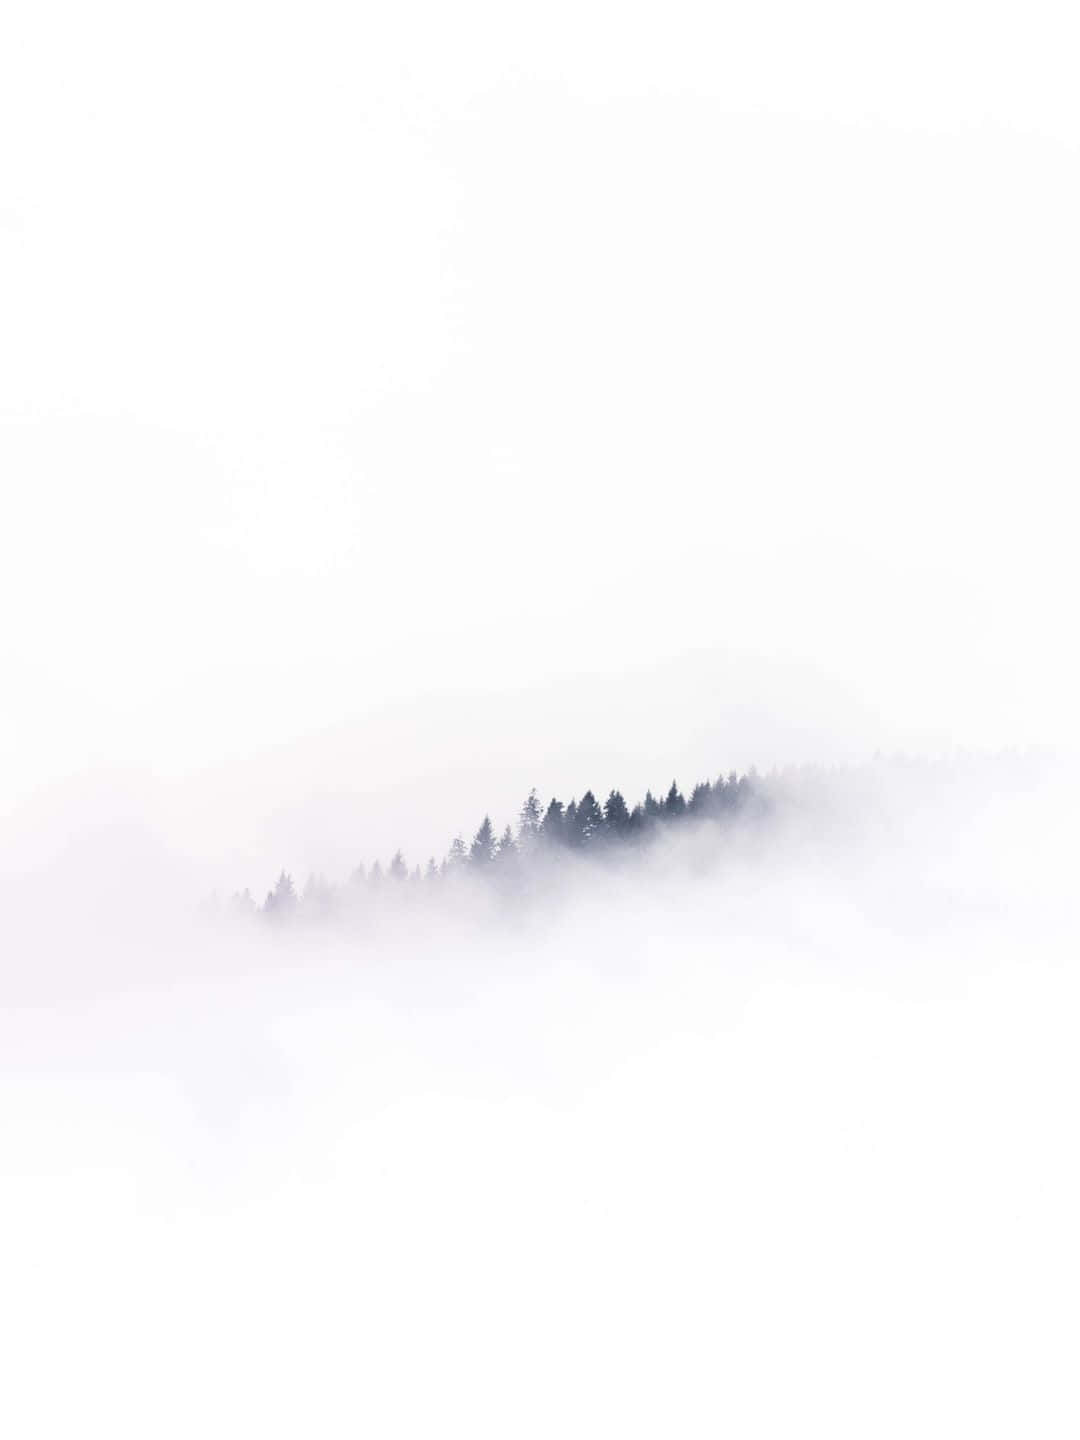 Unfondo Blanco Con Una Niebla Cubriendo Los Árboles